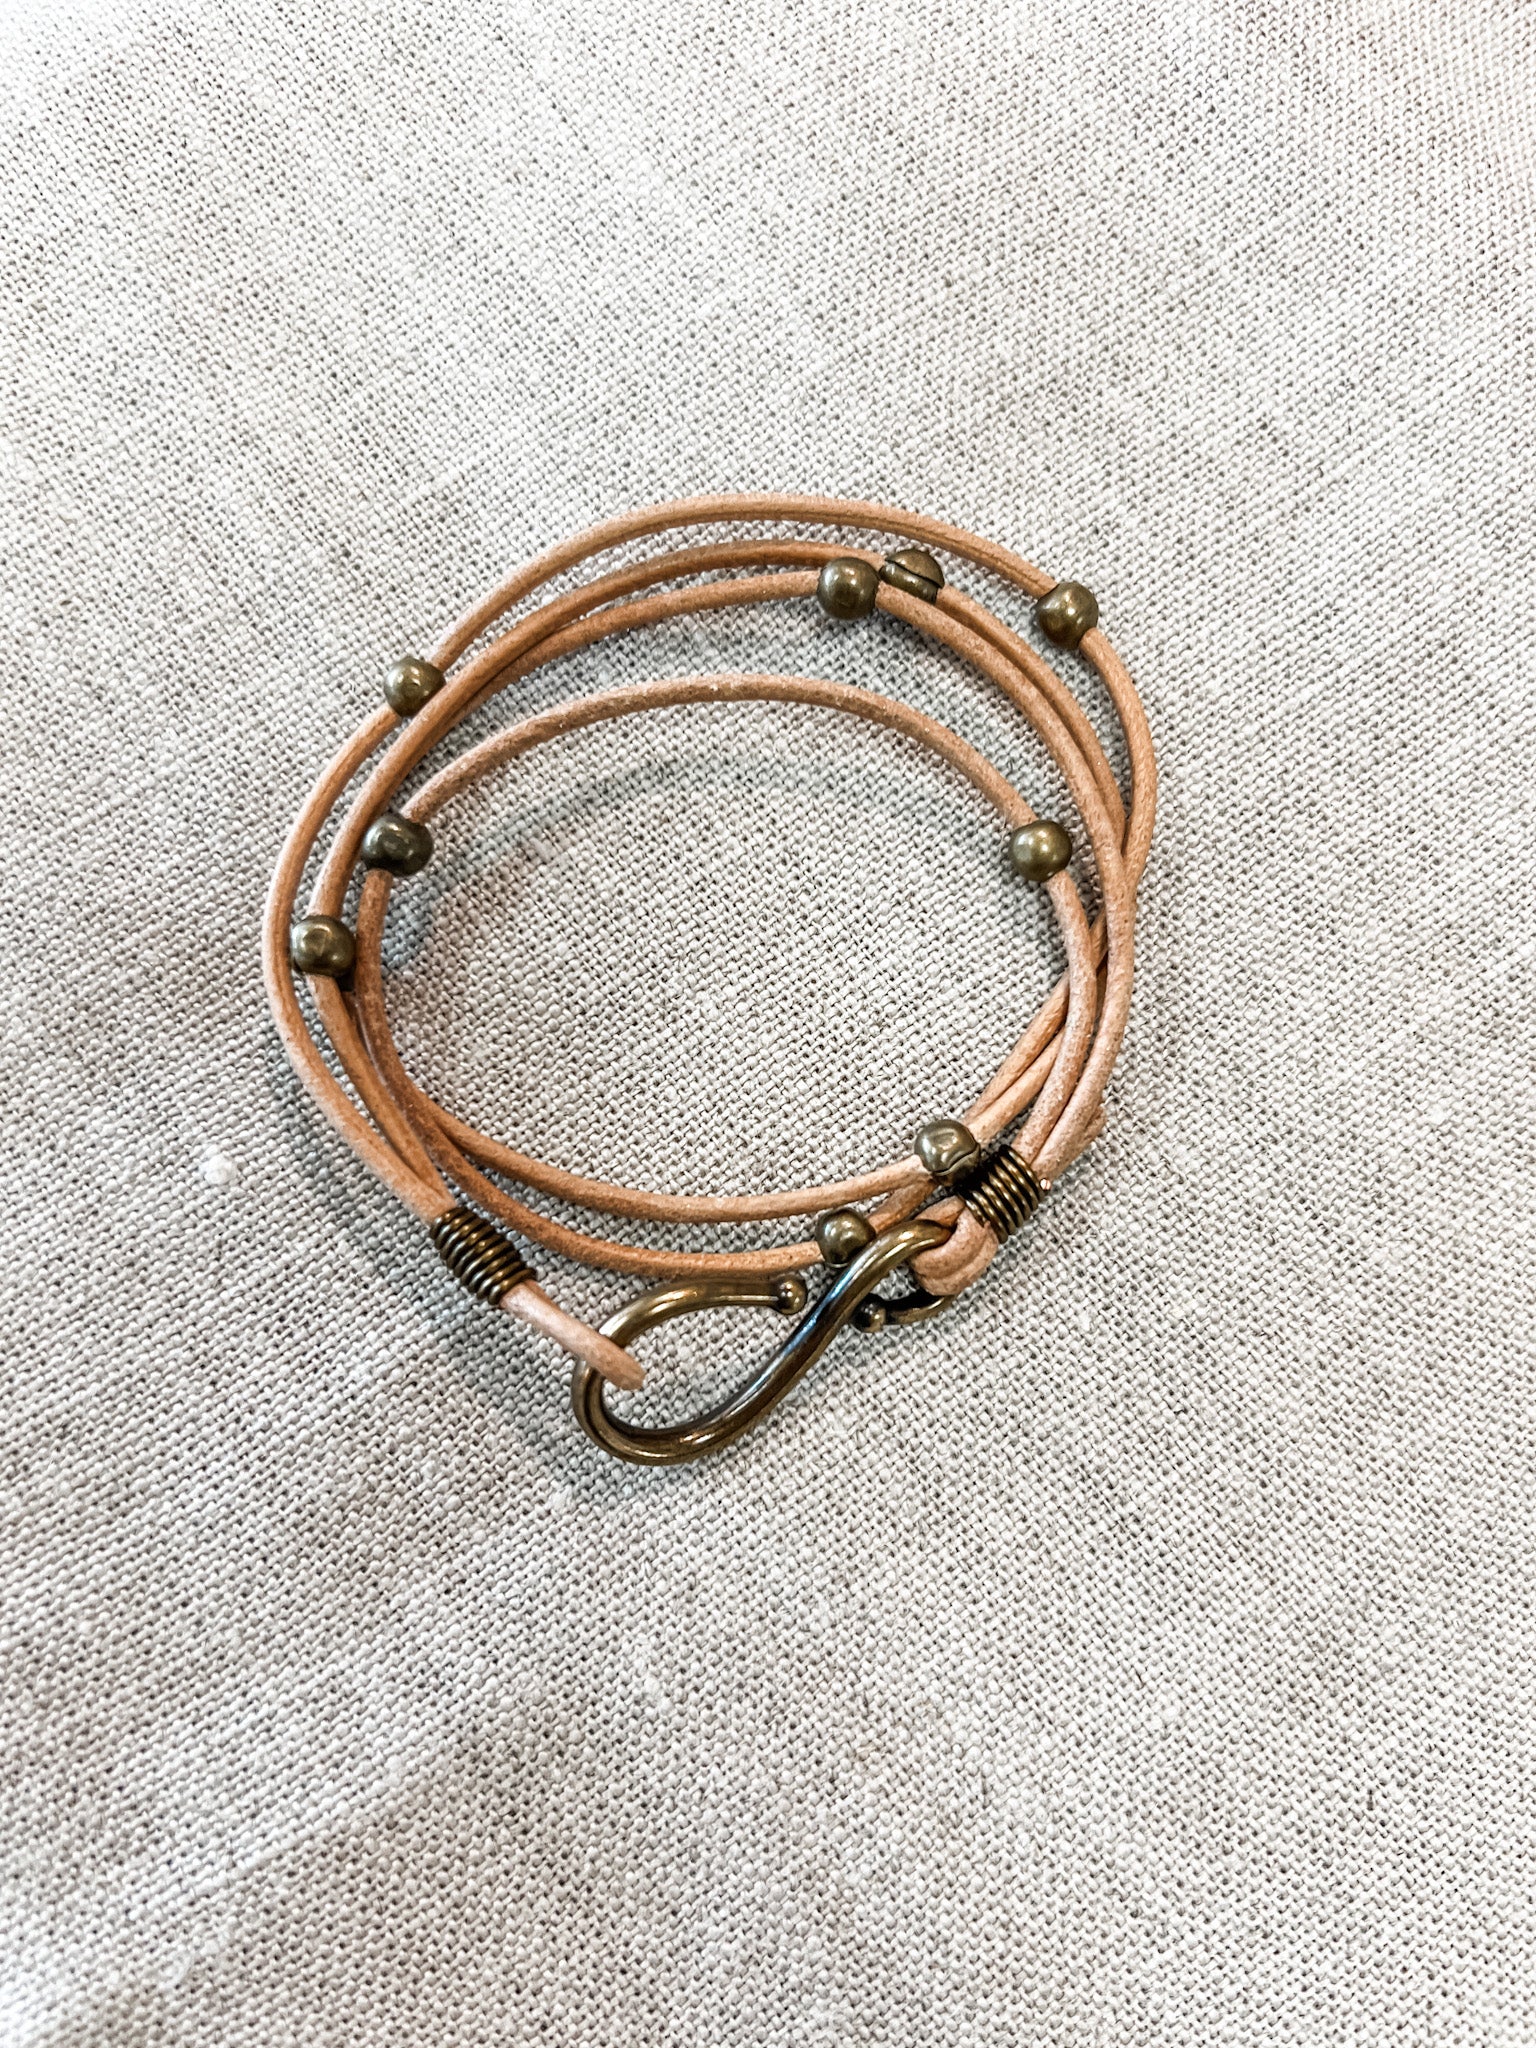 Double Leather Hook Wrap Bracelet/Choker